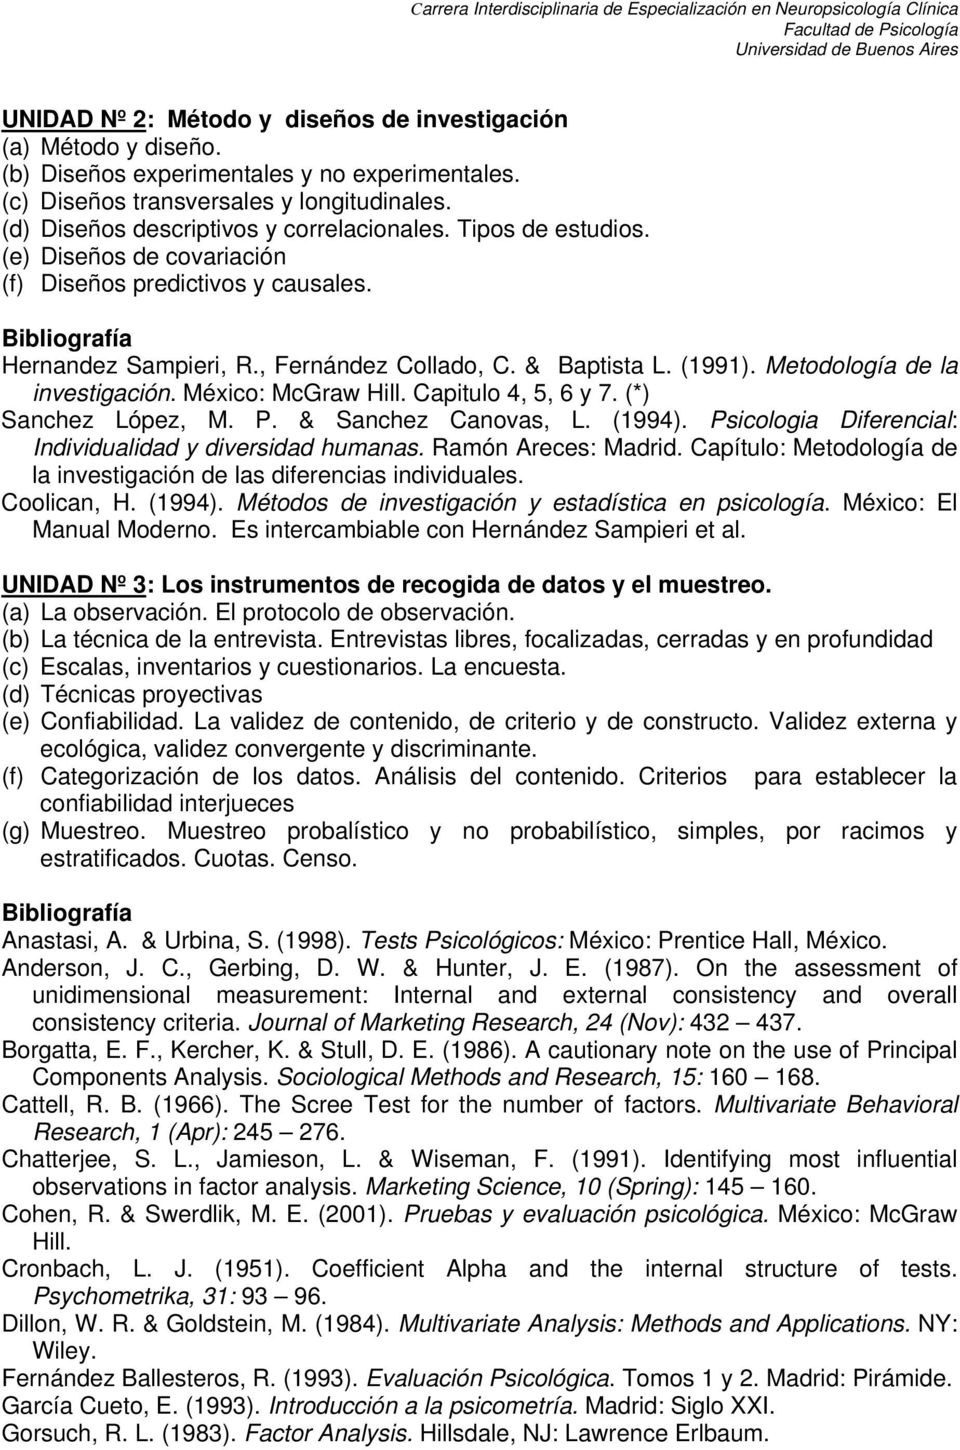 (1991). Metodología de la investigación. México: McGraw Hill. Capitulo 4, 5, 6 y 7. (*) Sanchez López, M. P. & Sanchez Canovas, L. (1994). Psicologia Diferencial: Individualidad y diversidad humanas.